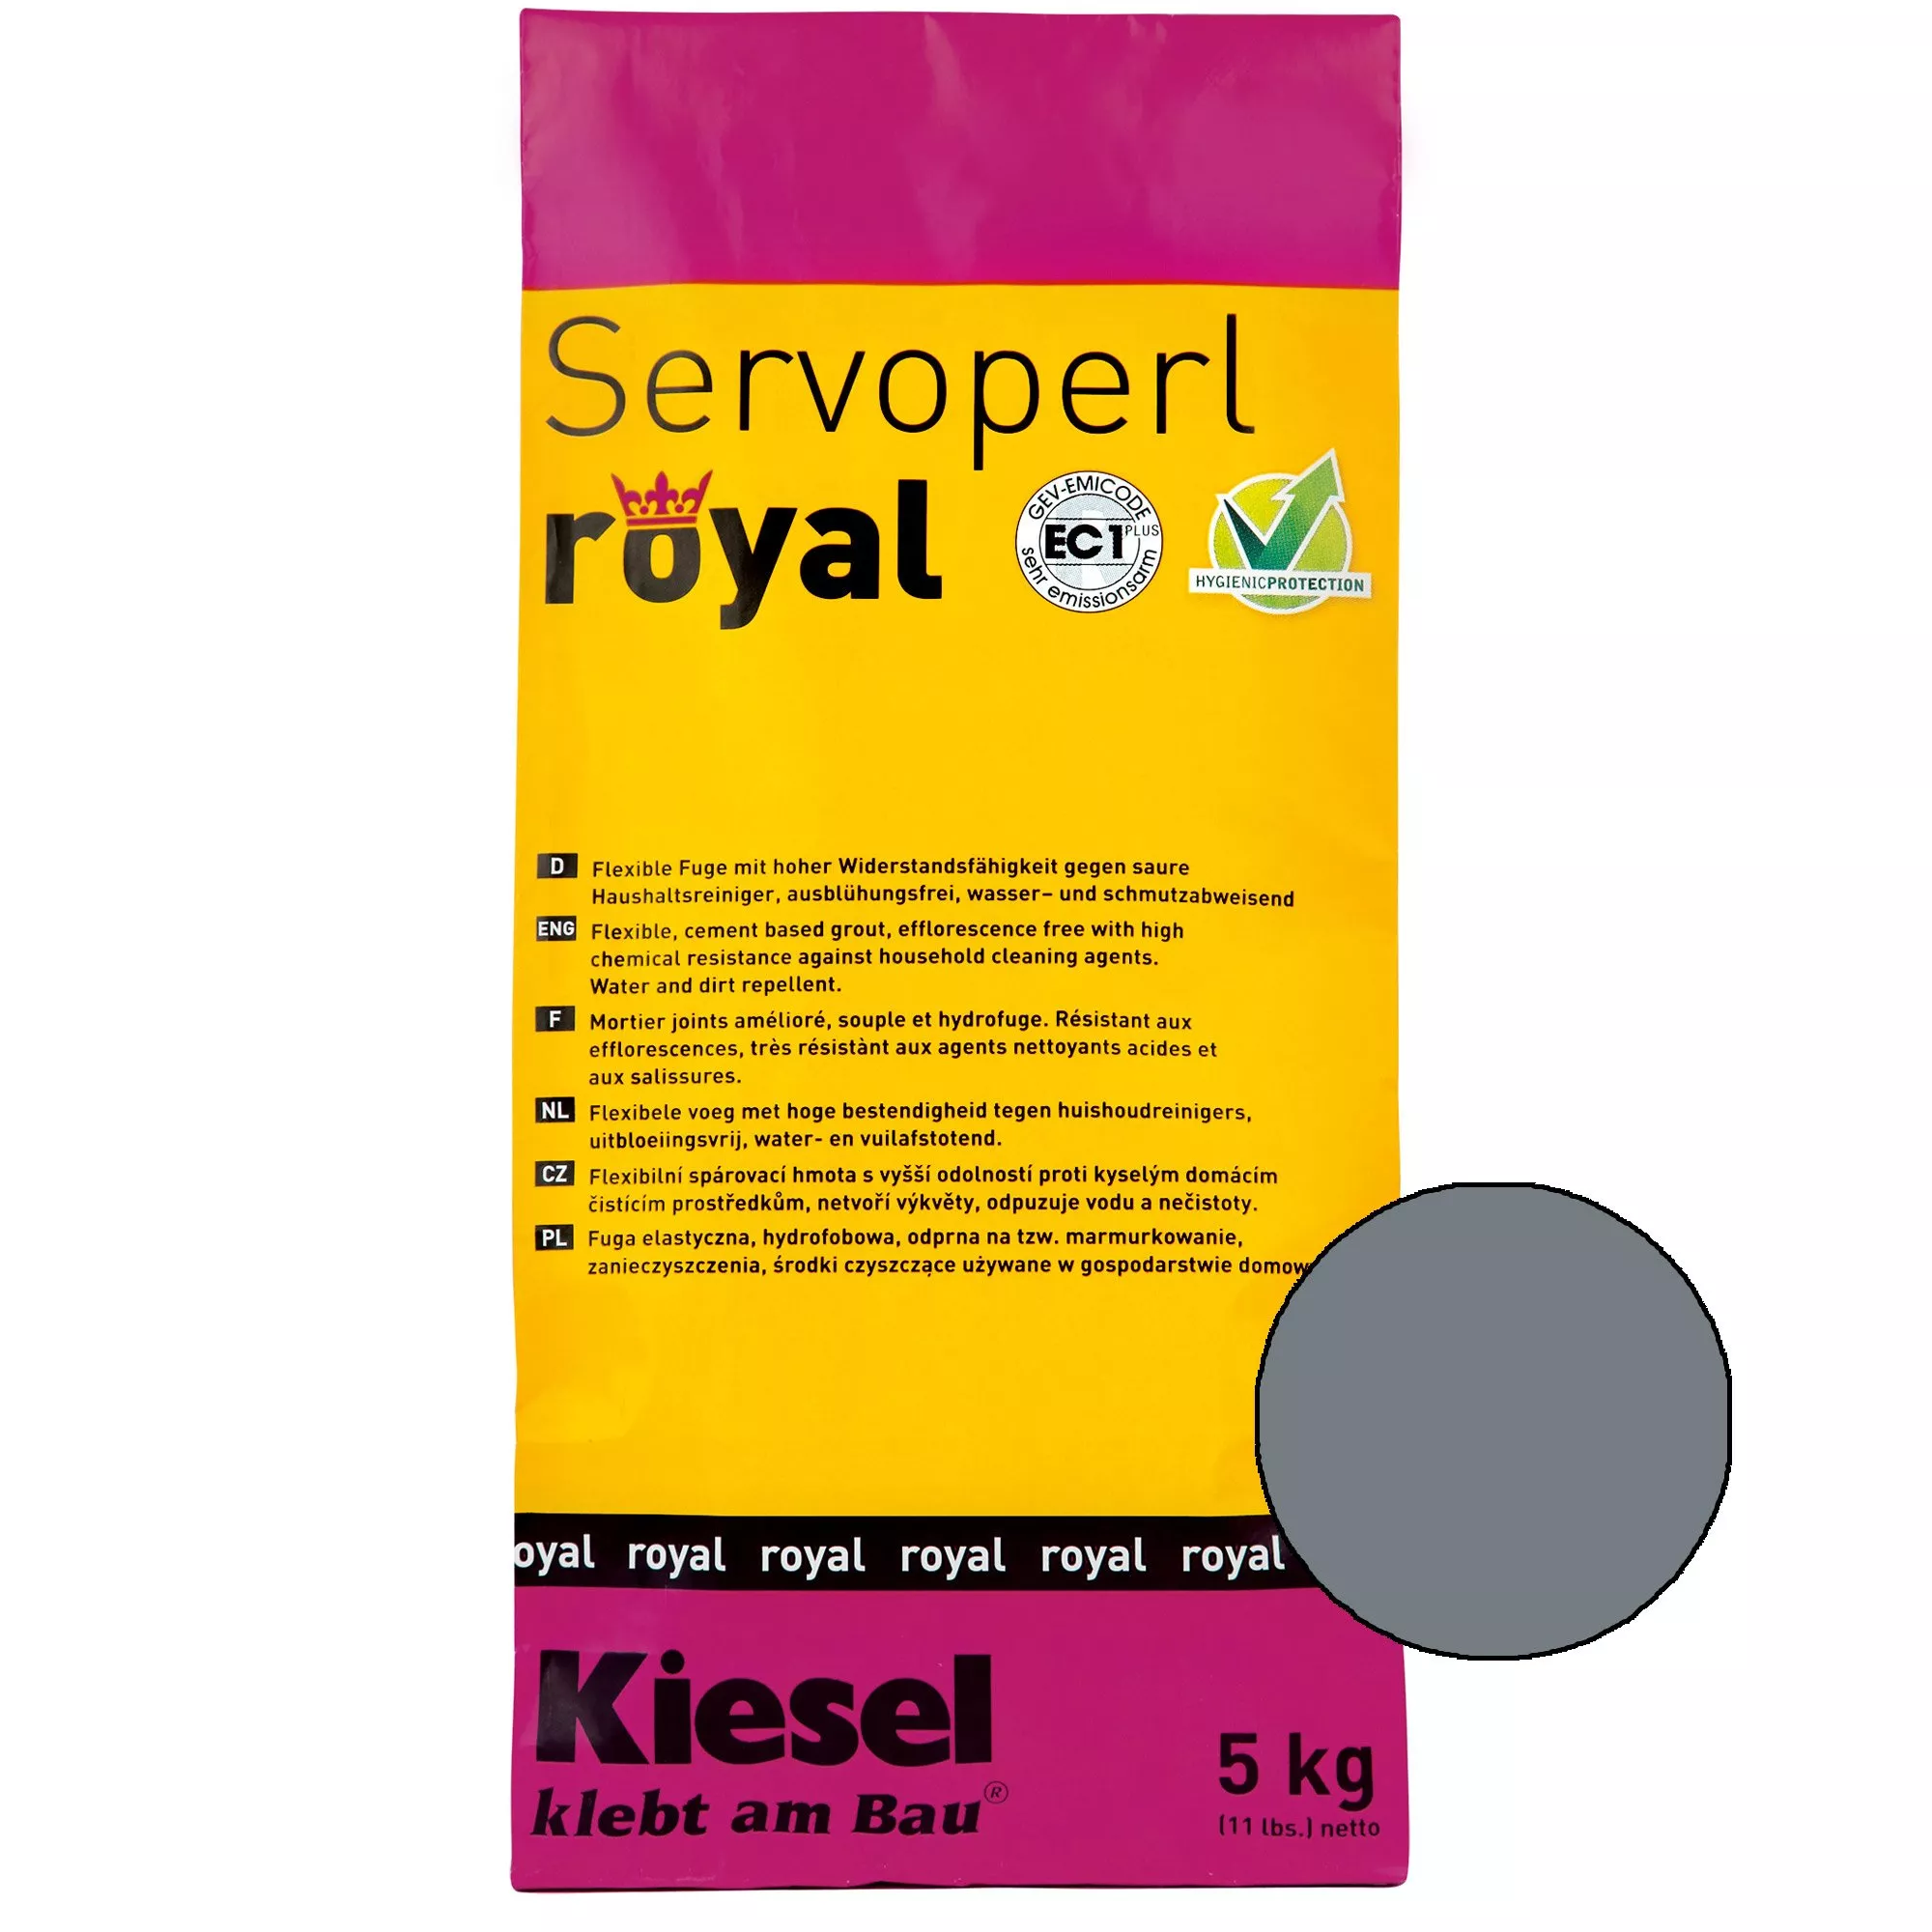 Kiesel Servoperl Royal - Elastyczna, Odporna Na Wodę I Brud Spoina (5KG Bazalt)